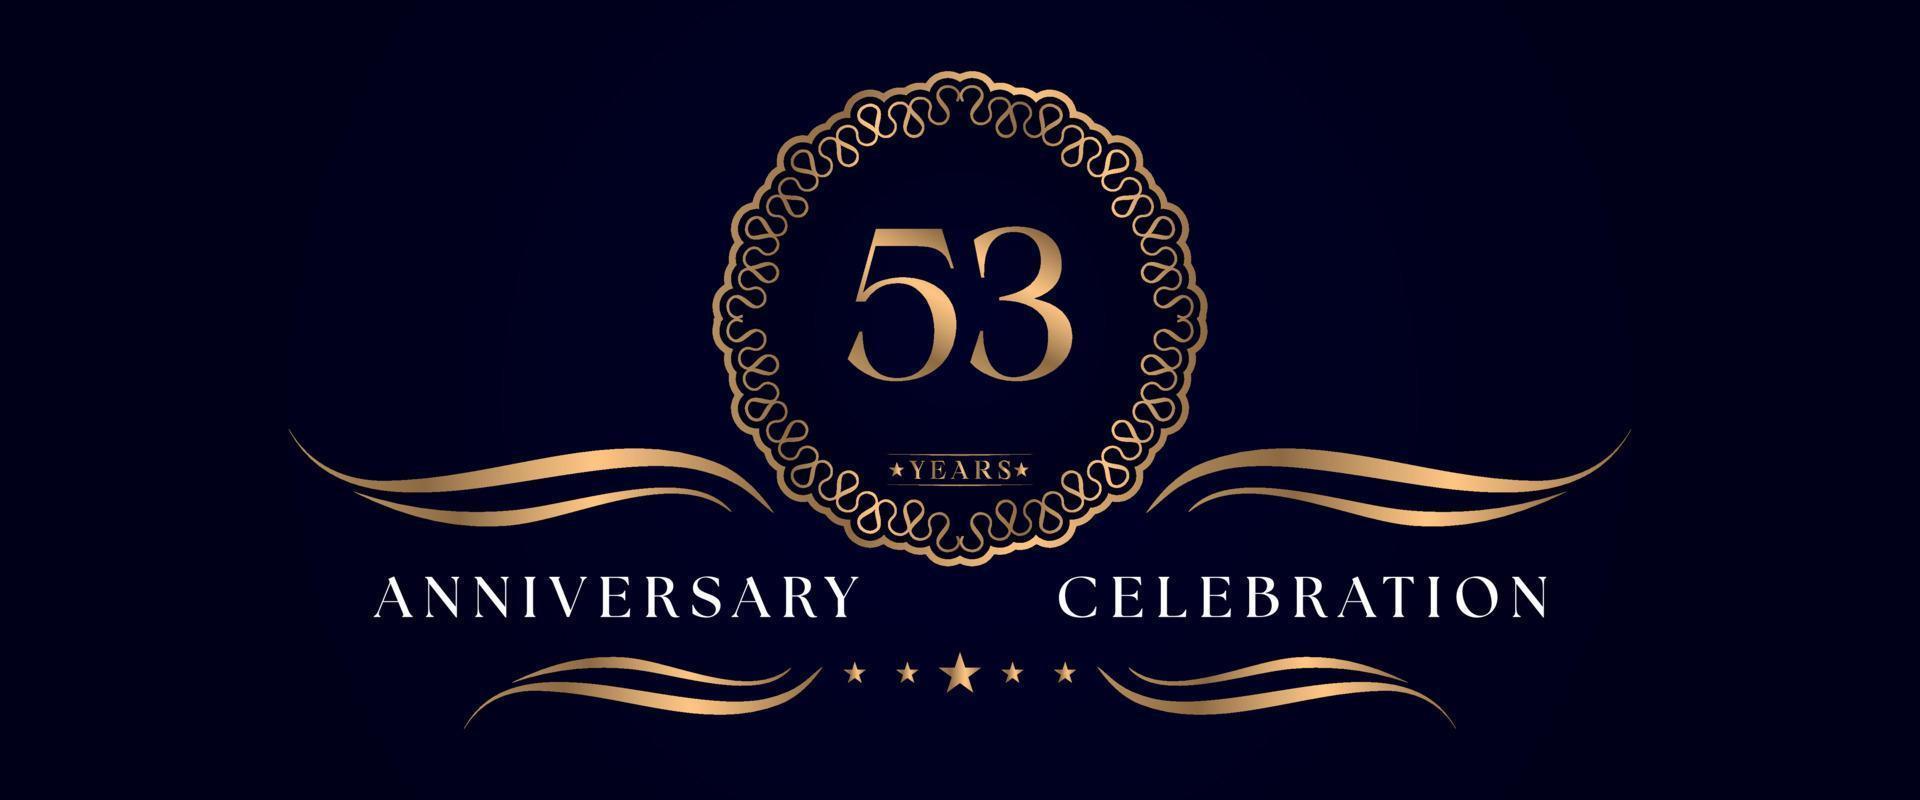 Celebrazione dell'anniversario di 53 anni con elegante cornice circolare isolata su sfondo blu scuro. disegno vettoriale per biglietto di auguri, festa di compleanno, matrimonio, festa evento, cerimonia. Logo dell'anniversario di 53 anni.